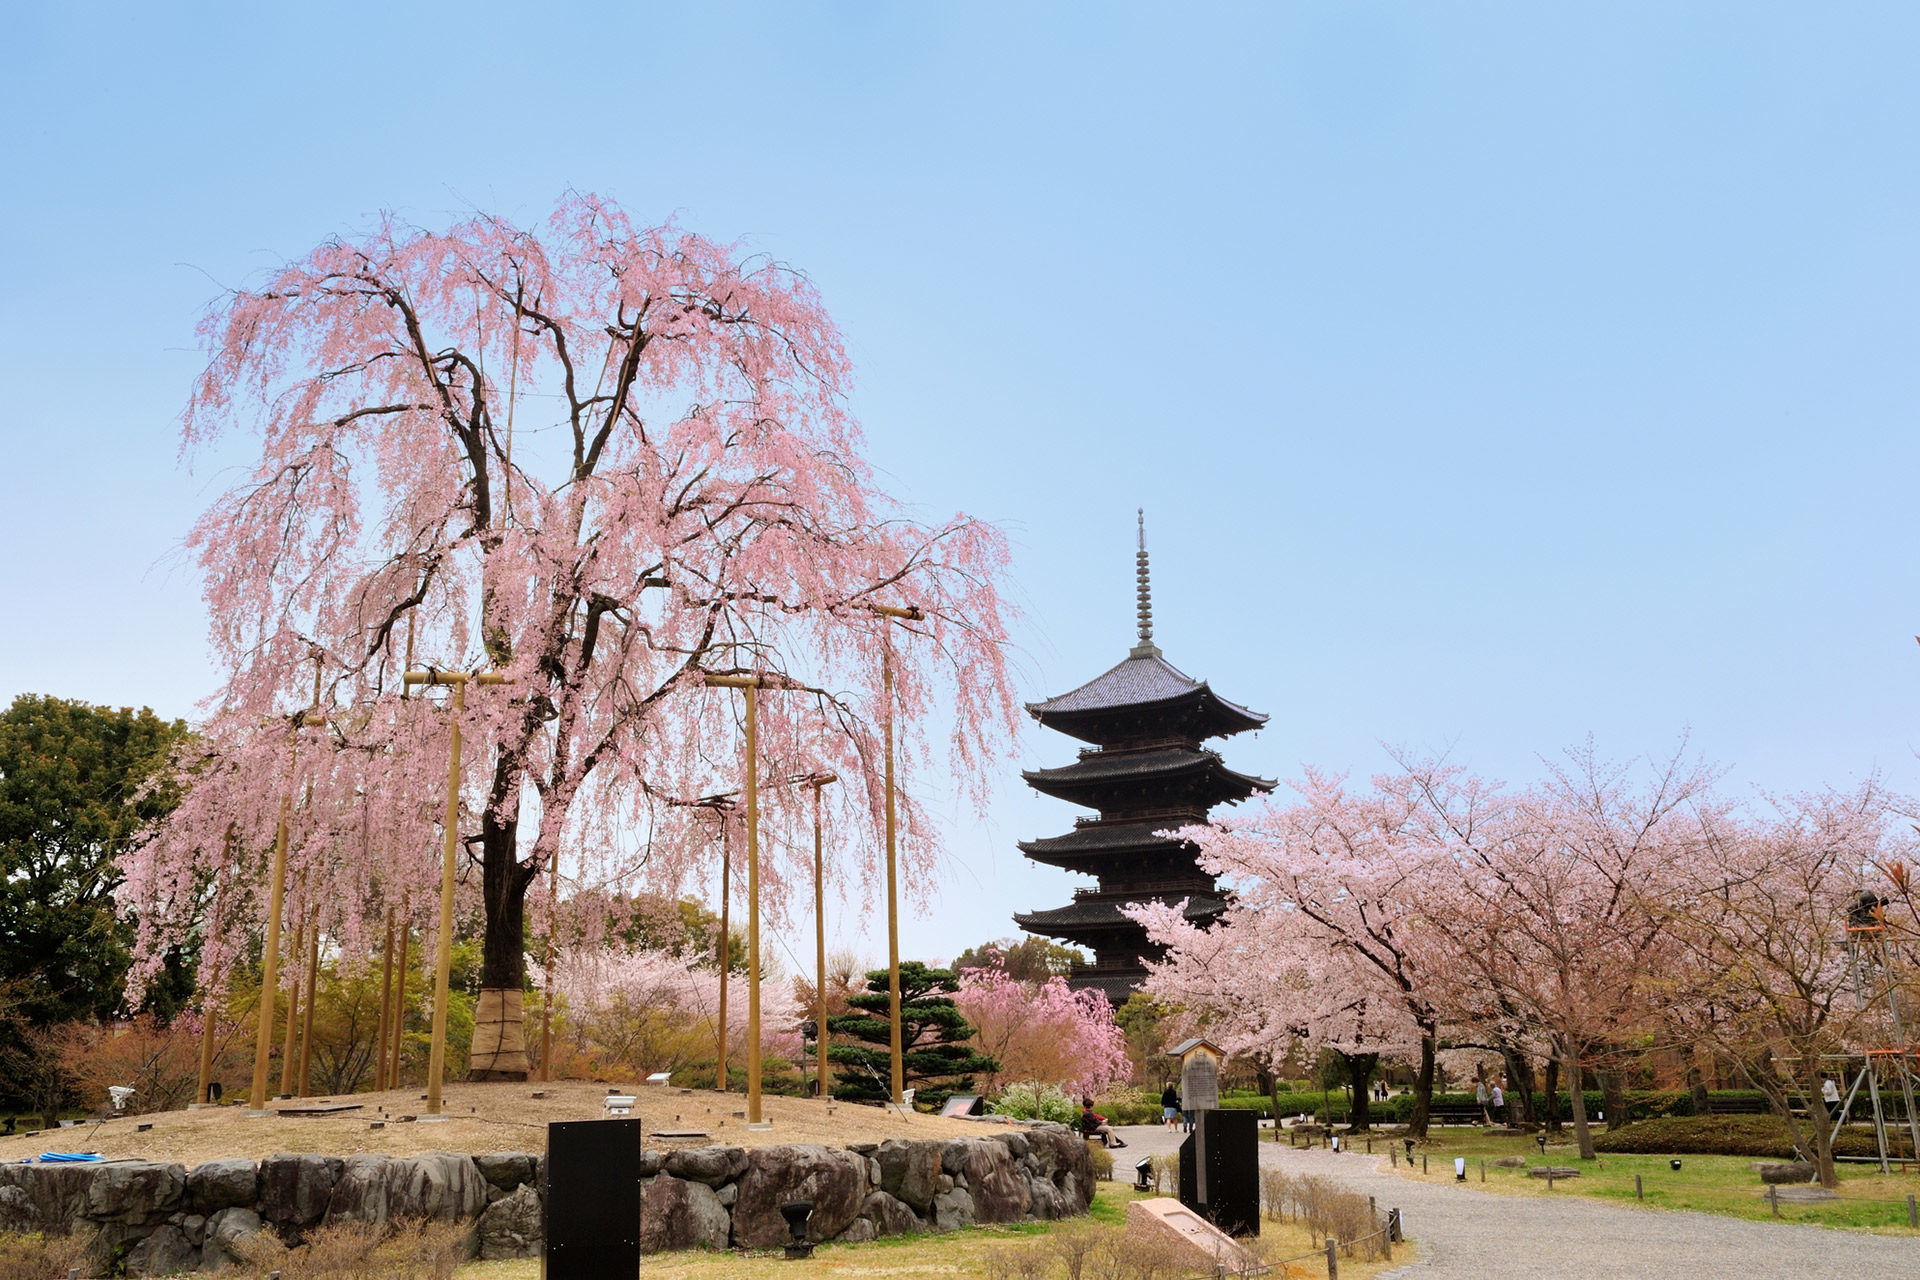 混雑を避けながら京都の桜をゆったり楽しむ方法は Caedekyoto カエデ京都 紅葉と伝統美を引き継ぐバッグ